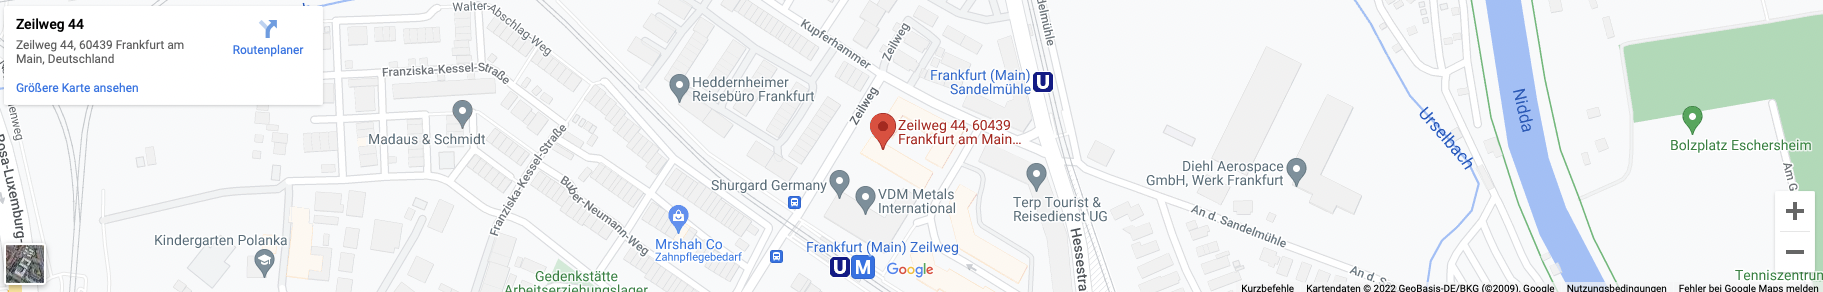 Google Maps Karte des Standortes von der Rosenberg Group